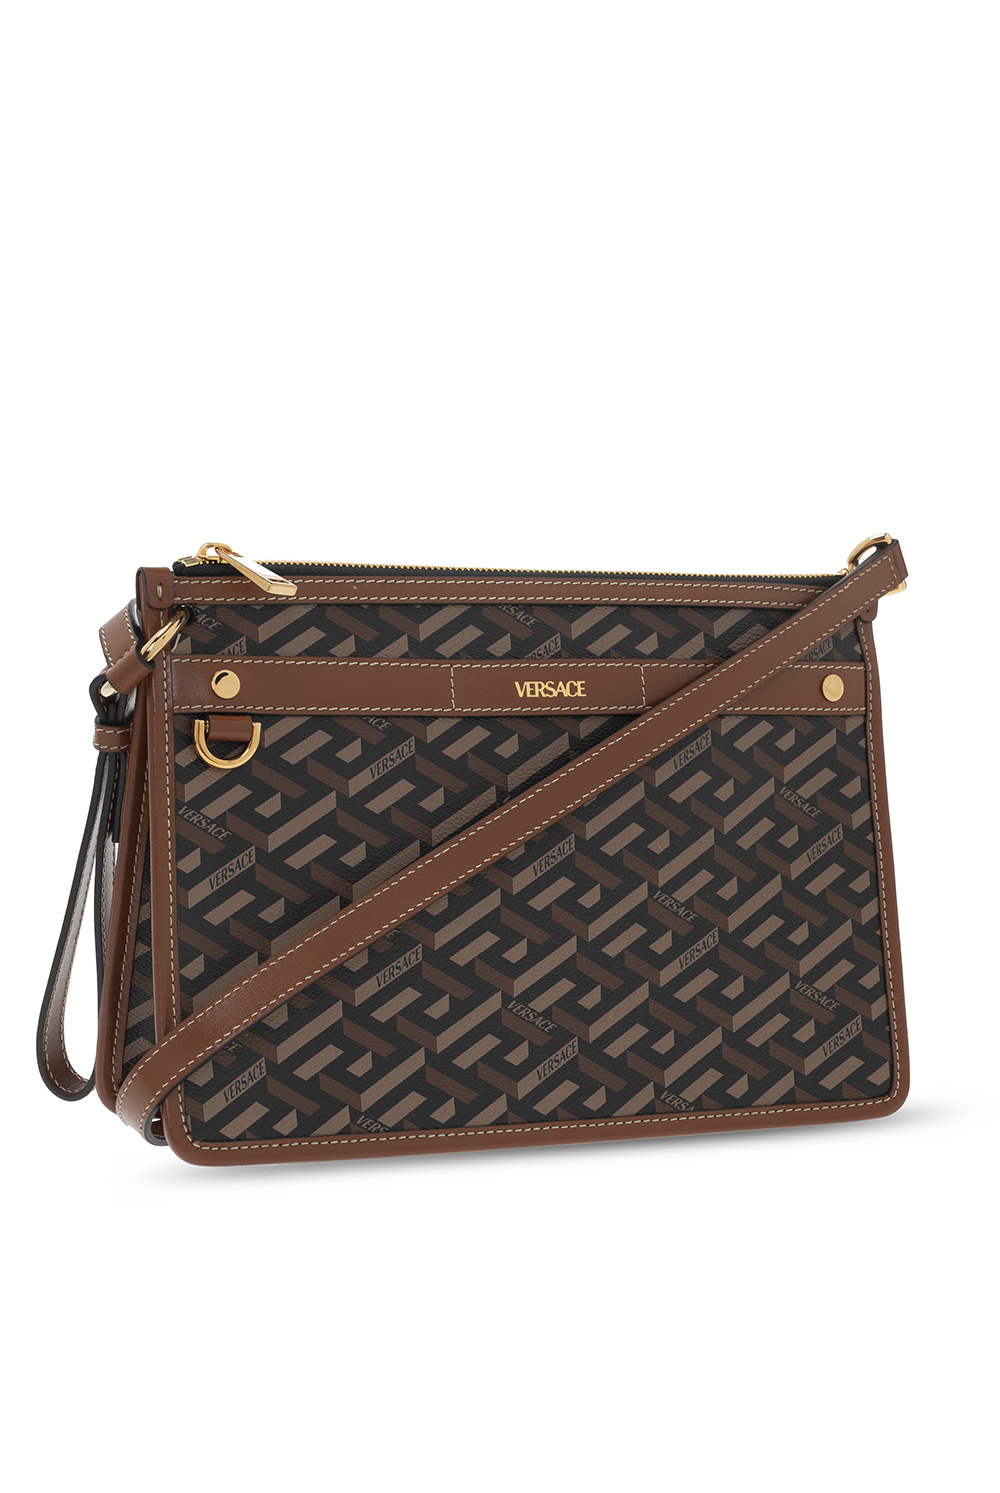 Versace ‘La Greca’ shoulder Brown bag